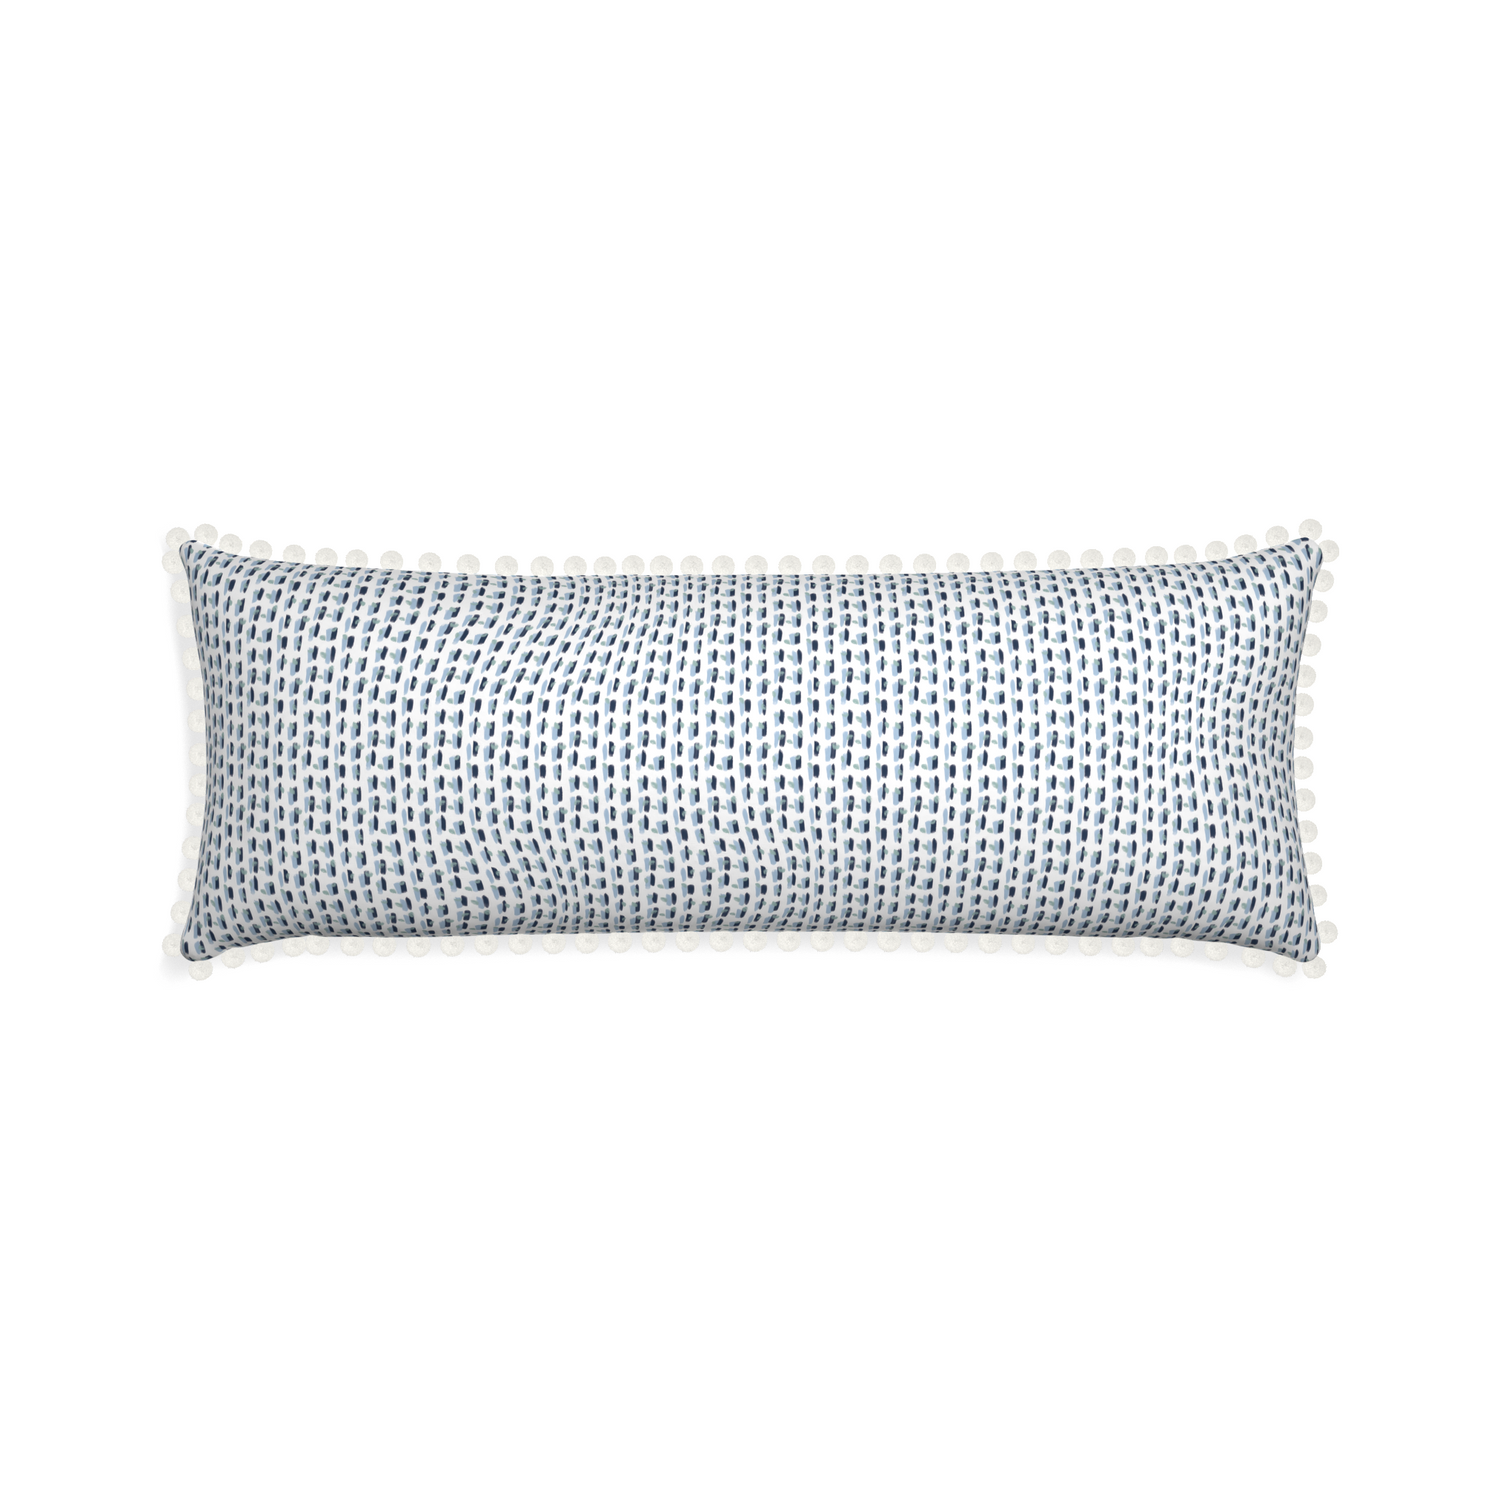 Xl-lumbar poppy blue custom pillow with snow pom pom on white background